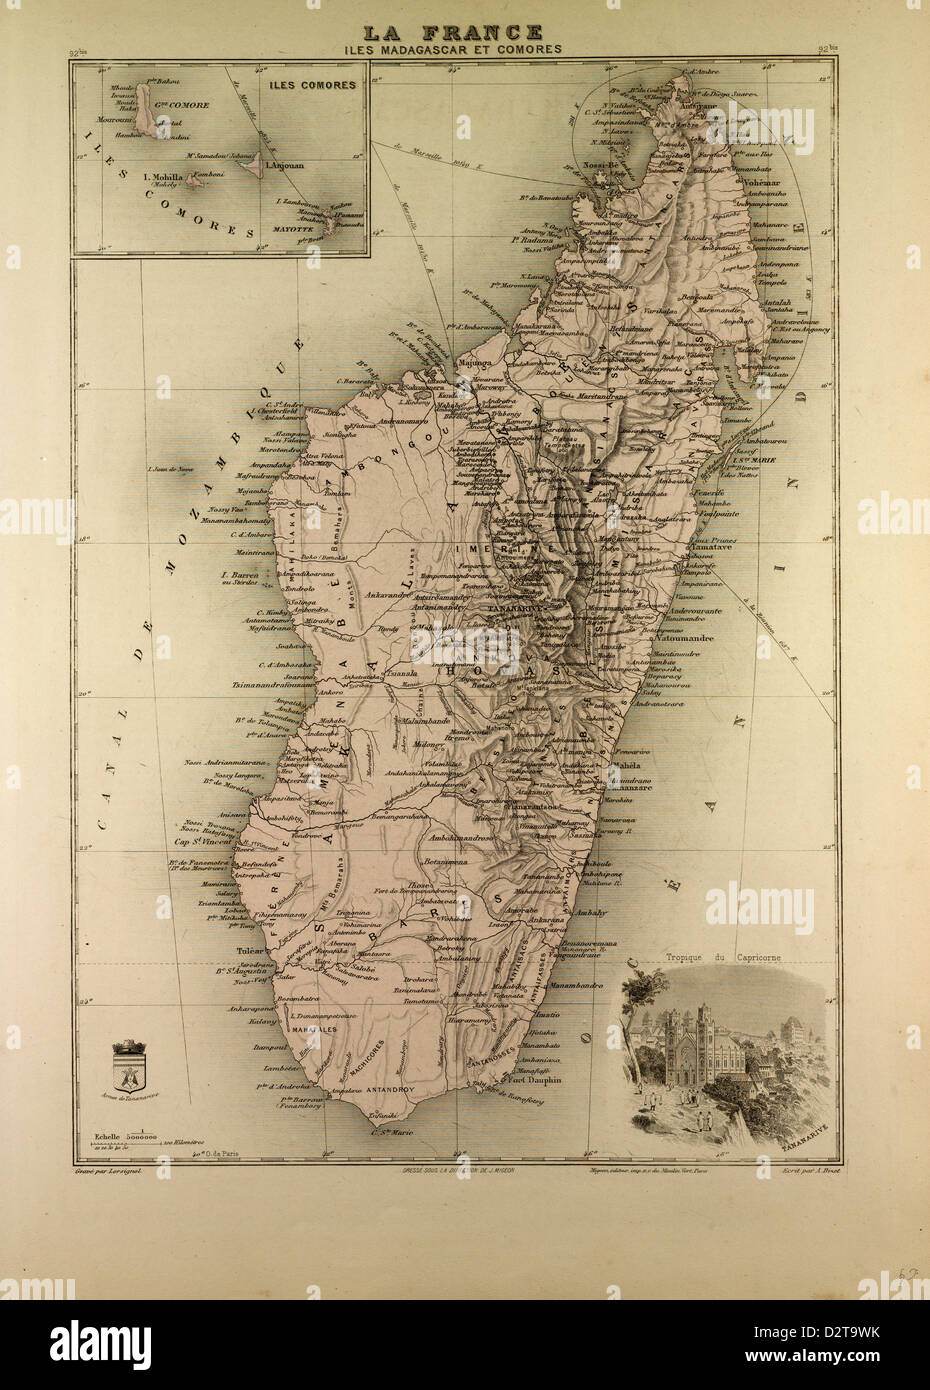 Мадагаскар карт 3. Мадагаскар карта 19 века. Мадагаскар 18 века. Мадагаскар в 19 веке карта. Карта Мадагаскара в 18 веке.